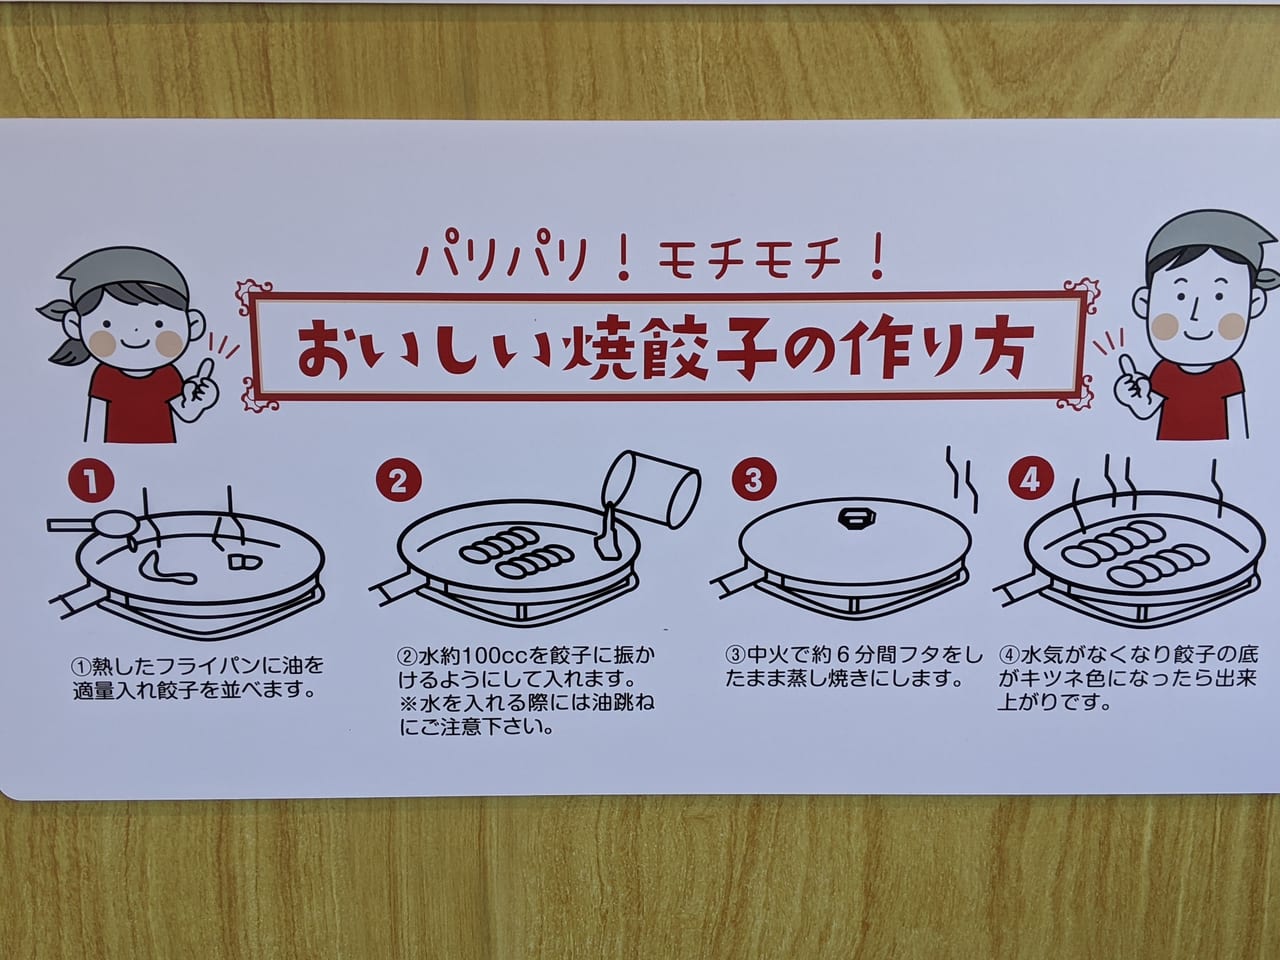 「餃子博」の"おいしい焼餃子の作り方"